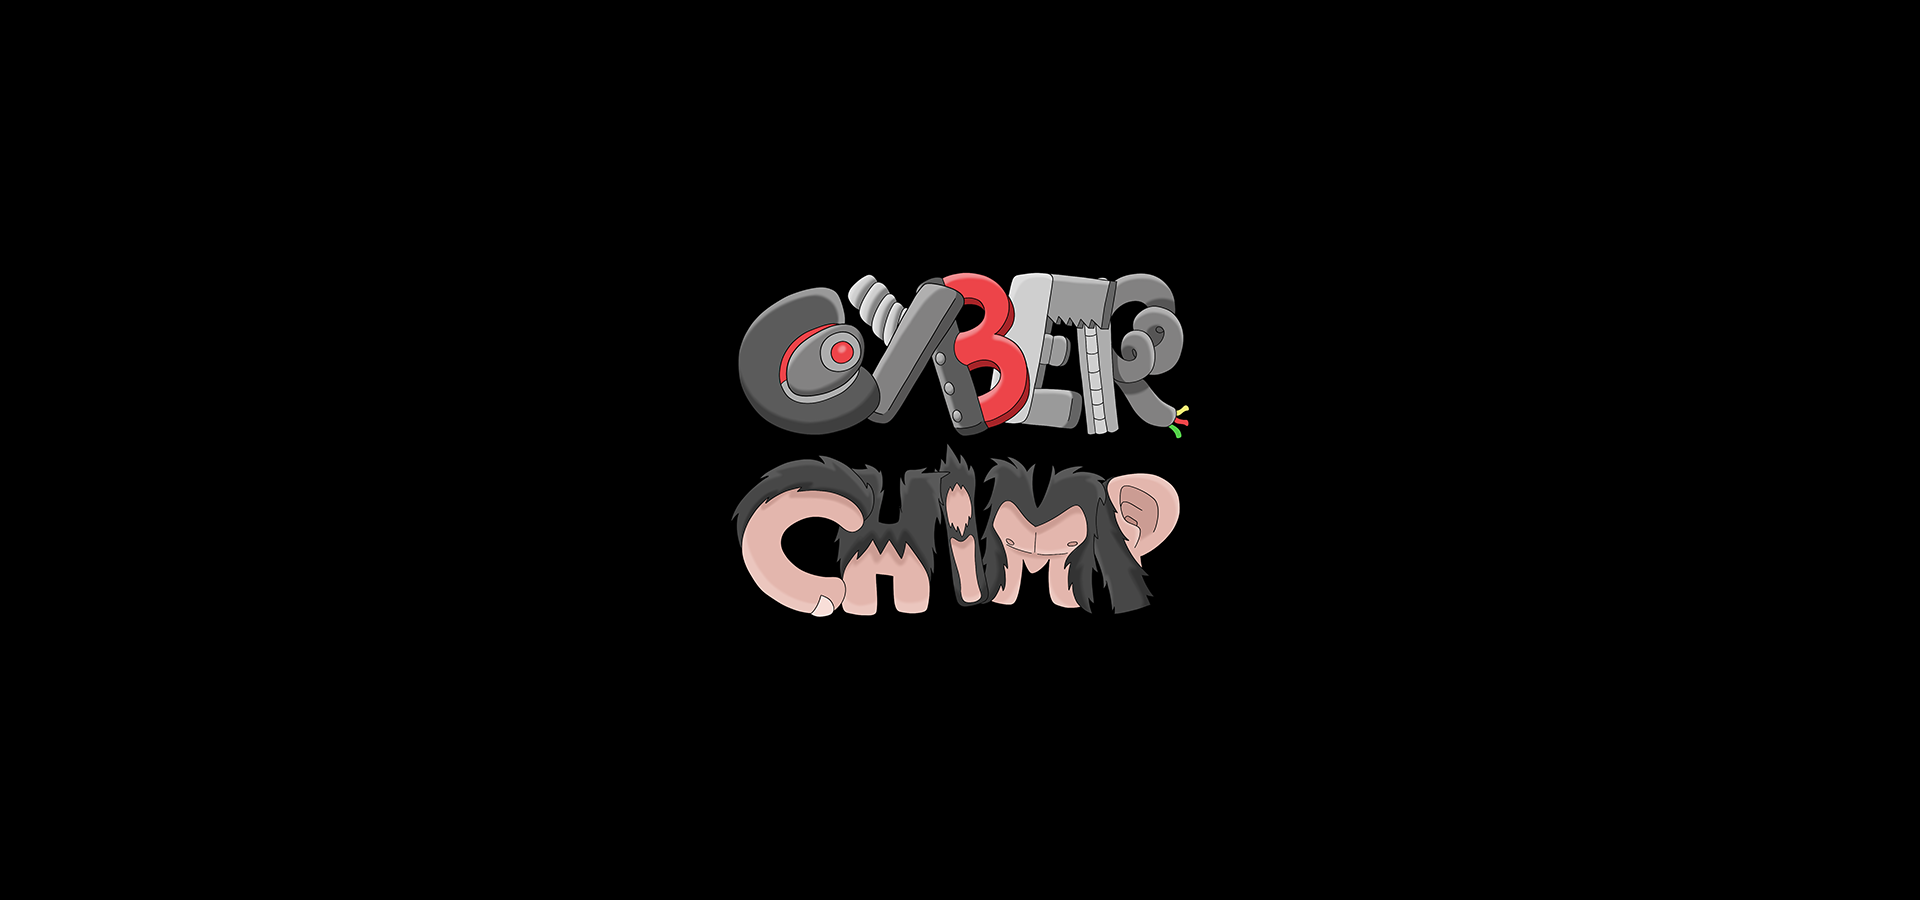 CyberChimp